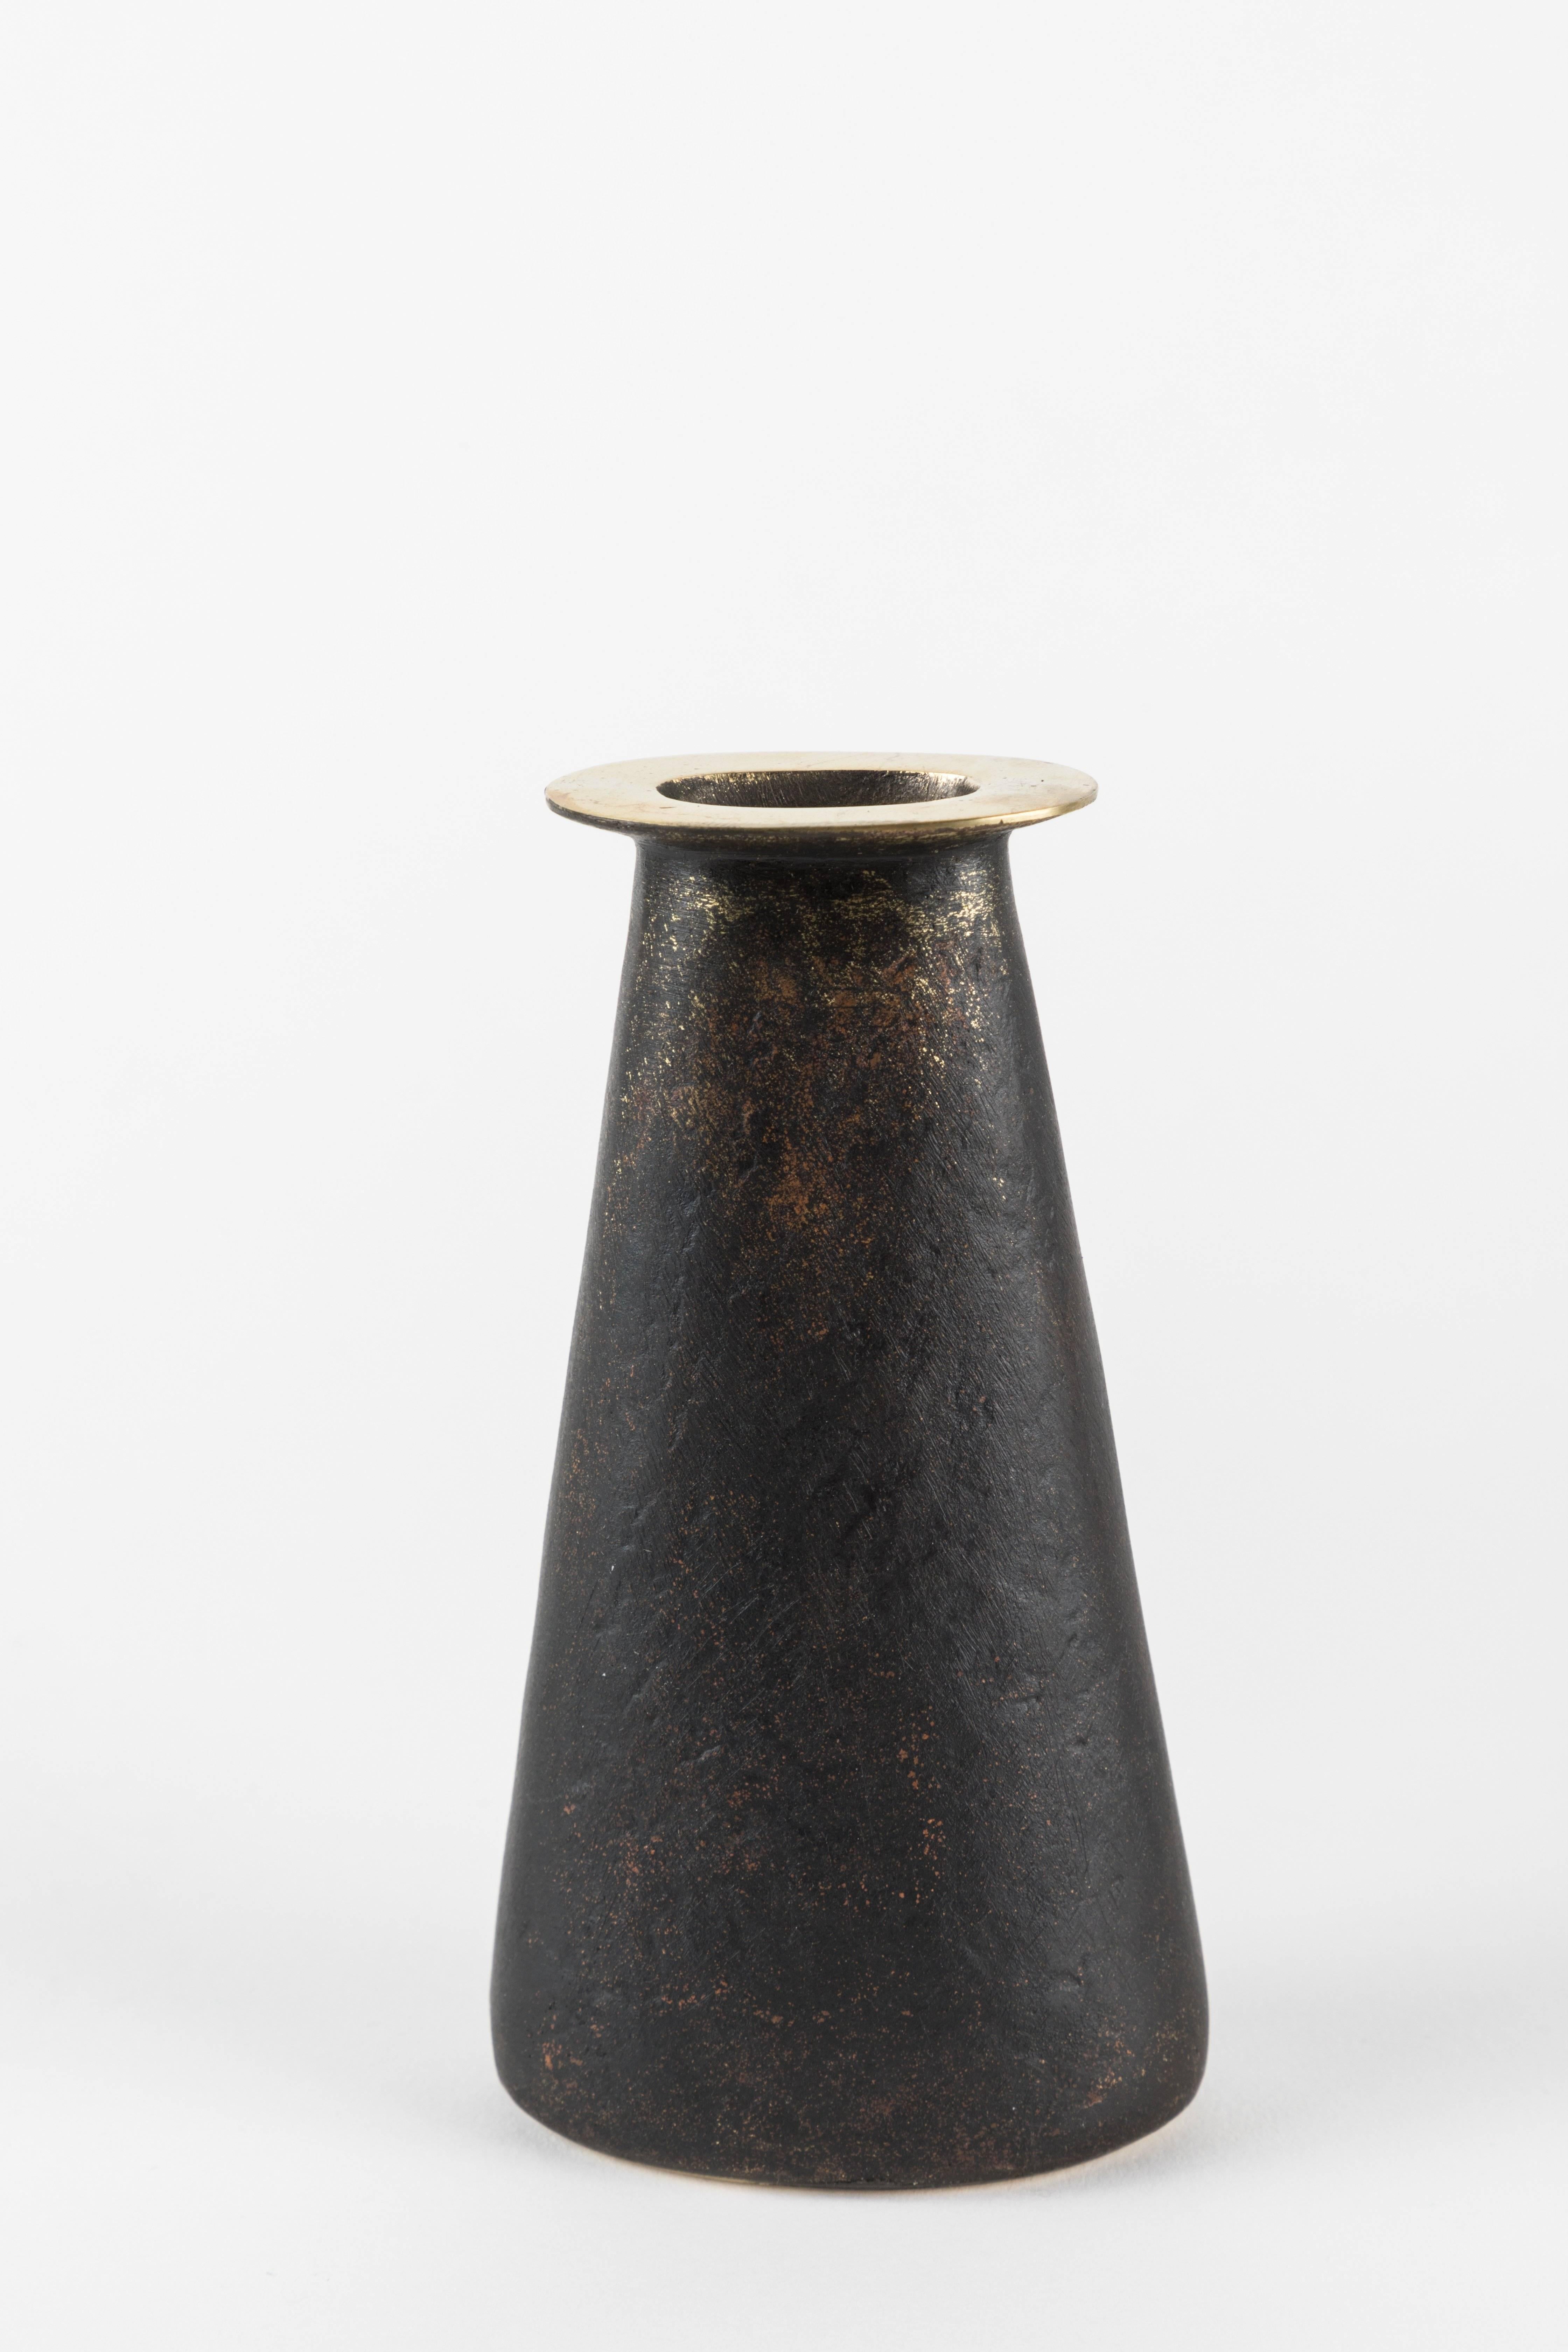 Carl Auböck Model #3794 'Aorta' Brass Vase For Sale 13